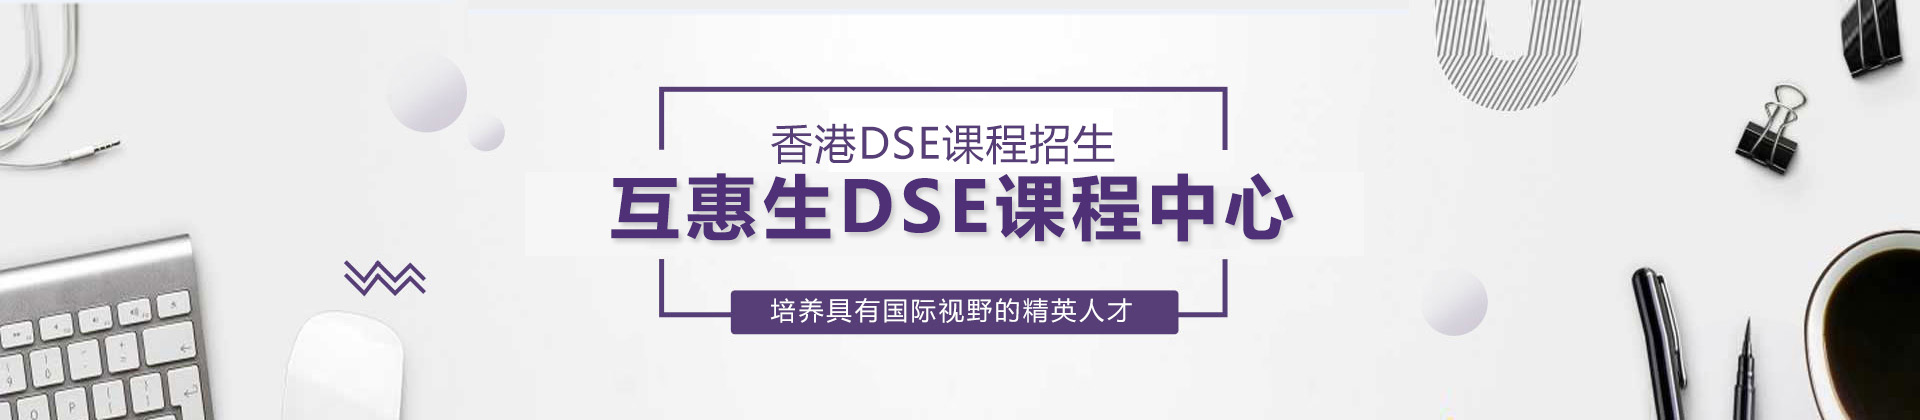 上海互惠生DSE课程中心